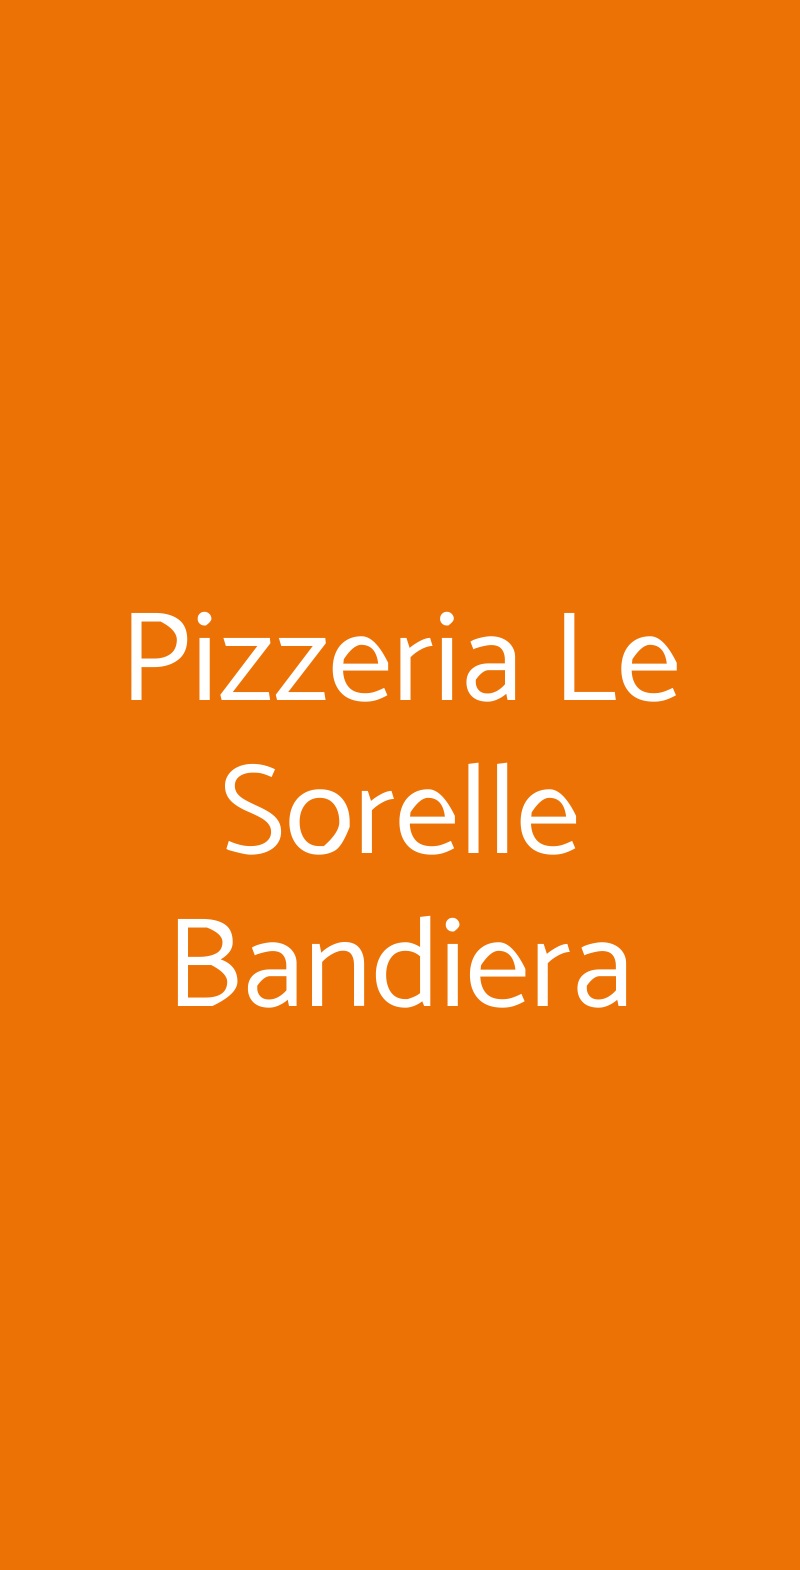 Pizzeria Le Sorelle Bandiera Napoli menù 1 pagina